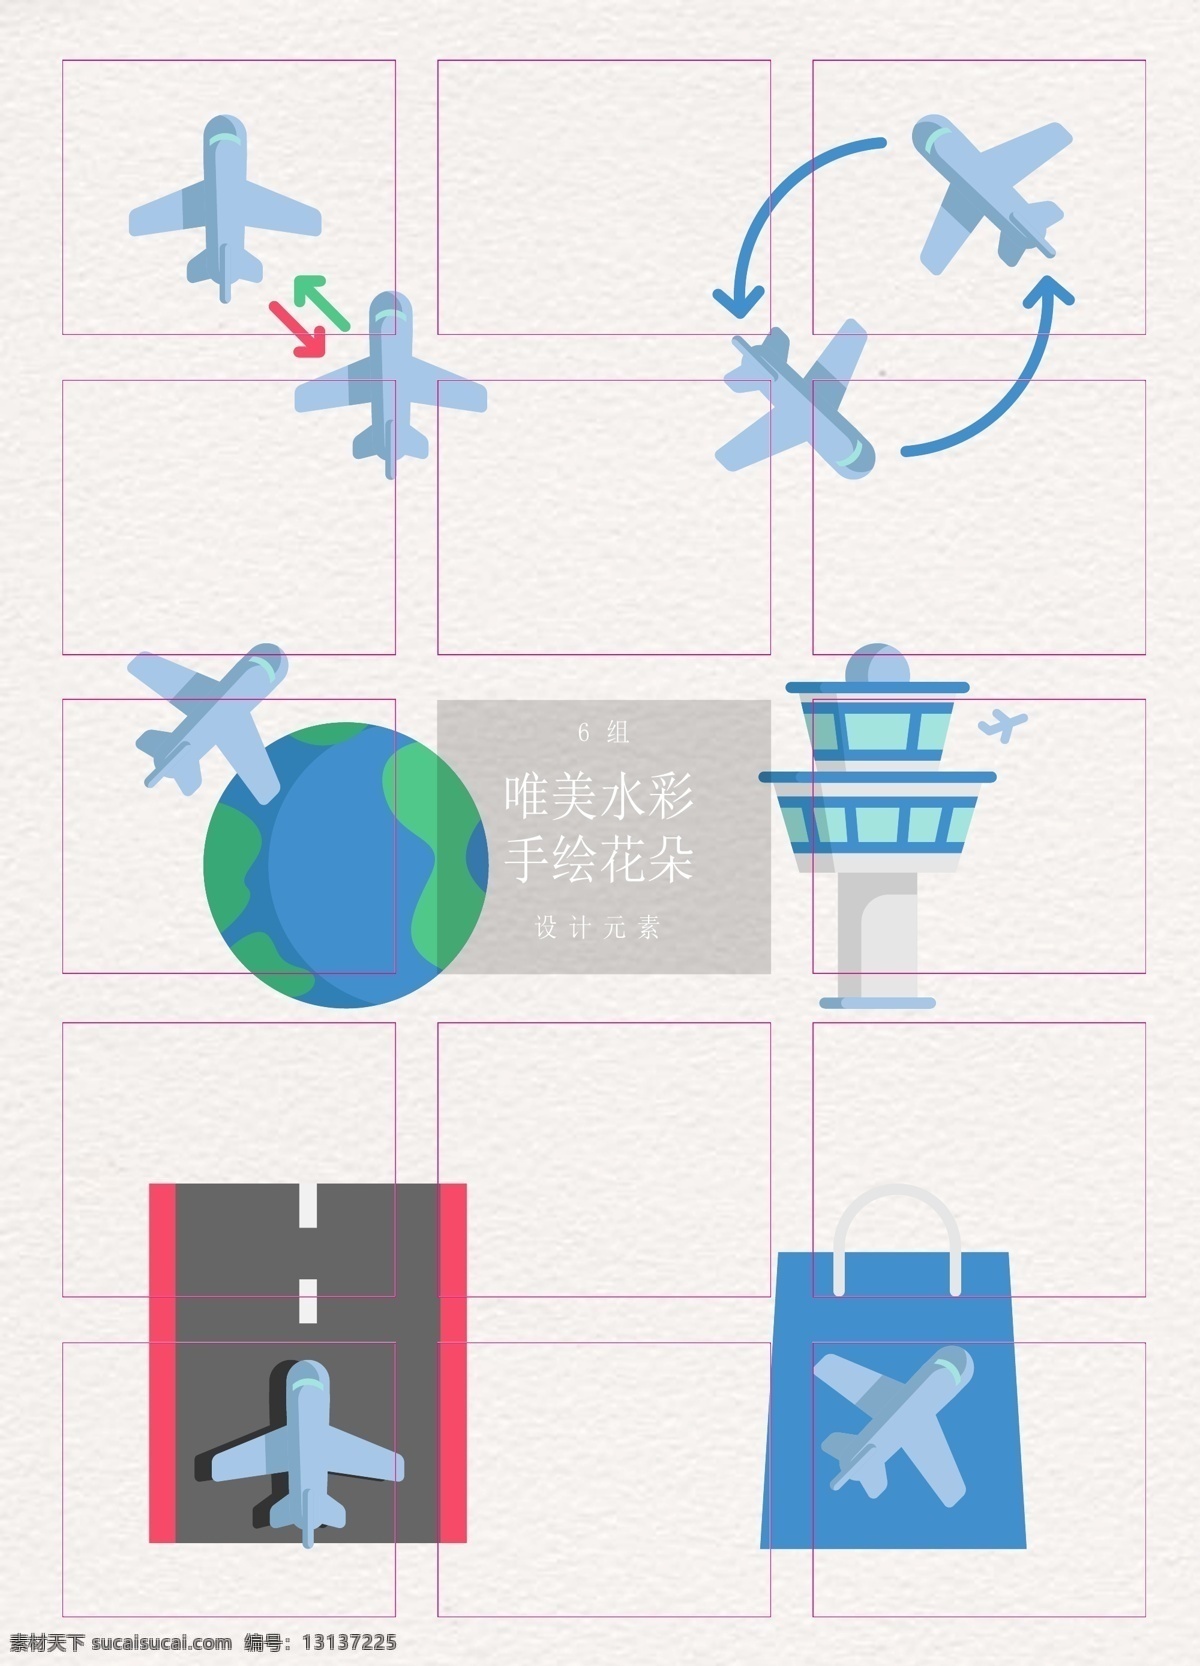 扁平化 机场 元素 图标 卡通 简约 矢量图标 飞机 机场元素 图标设计 航班 飞机跑道 换乘 免税 控制塔